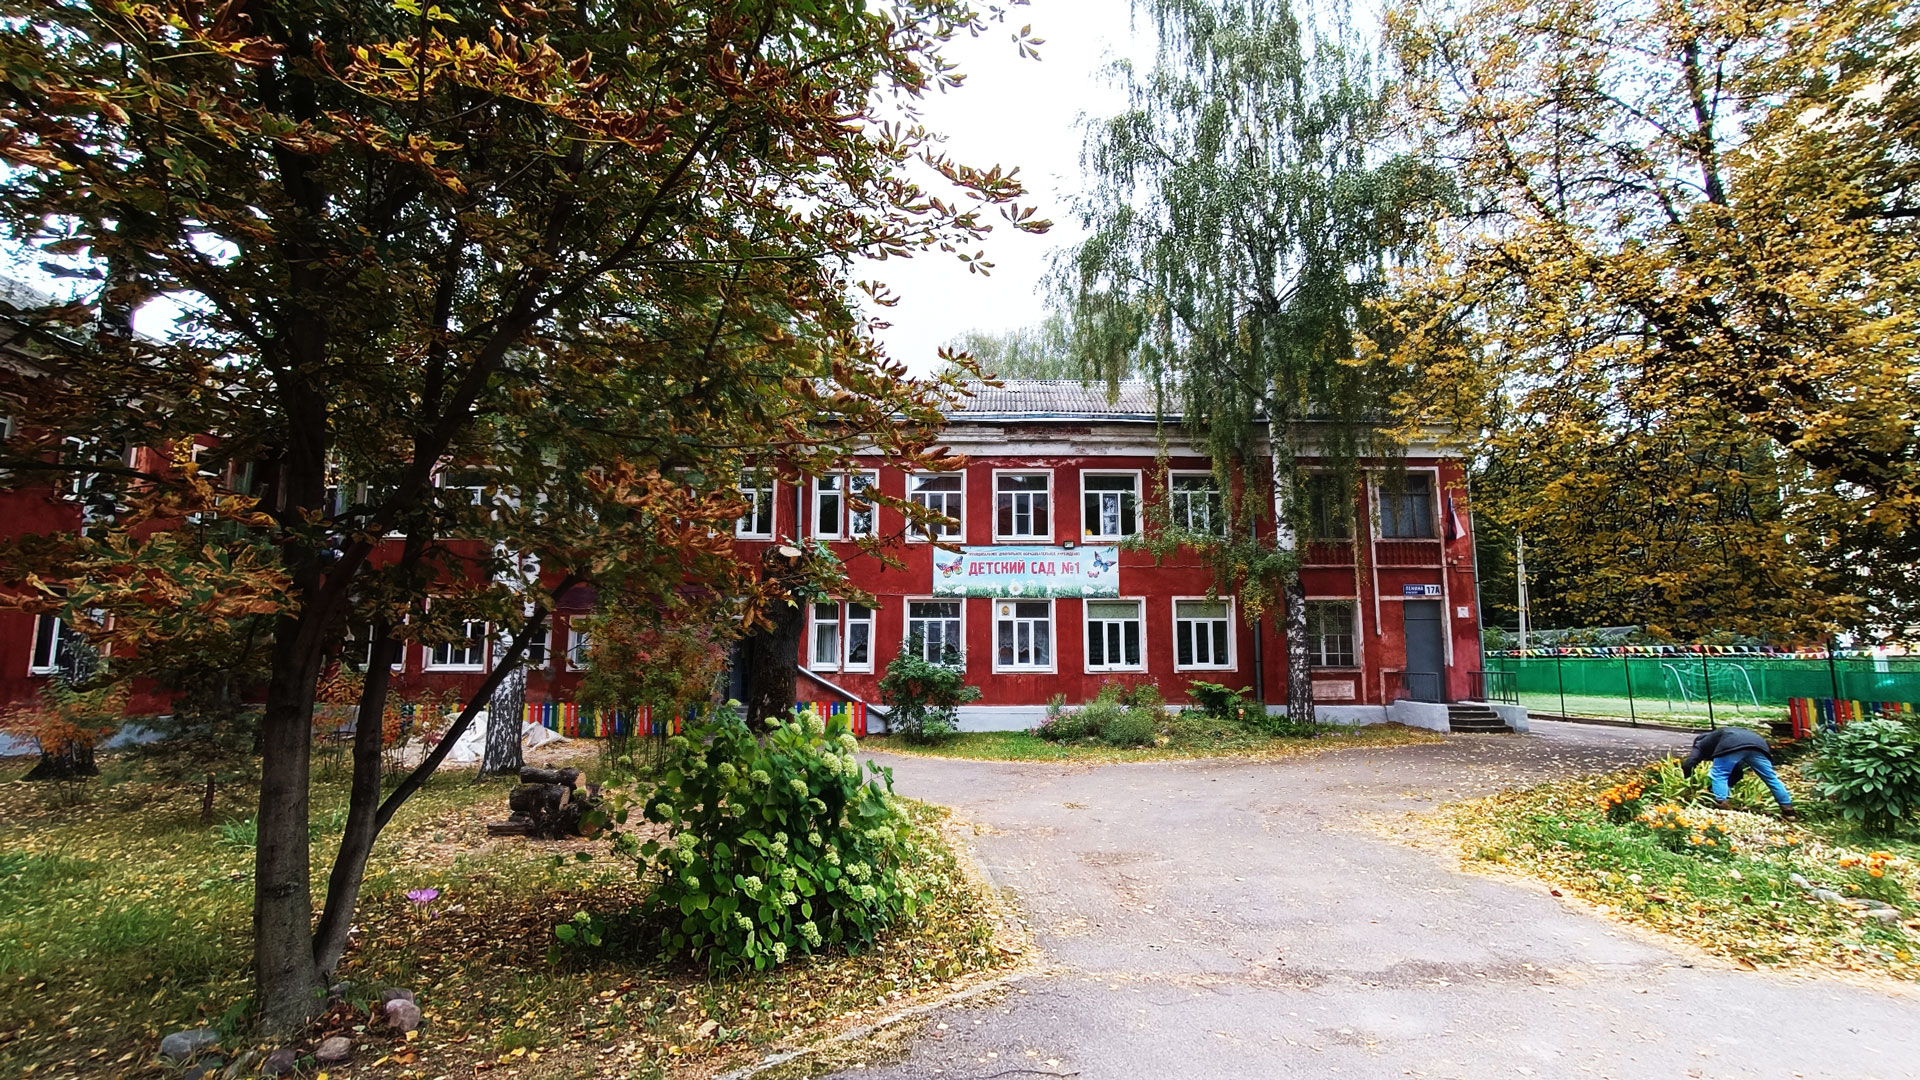 Детский сад 1 Ярославль: общий вид здания.